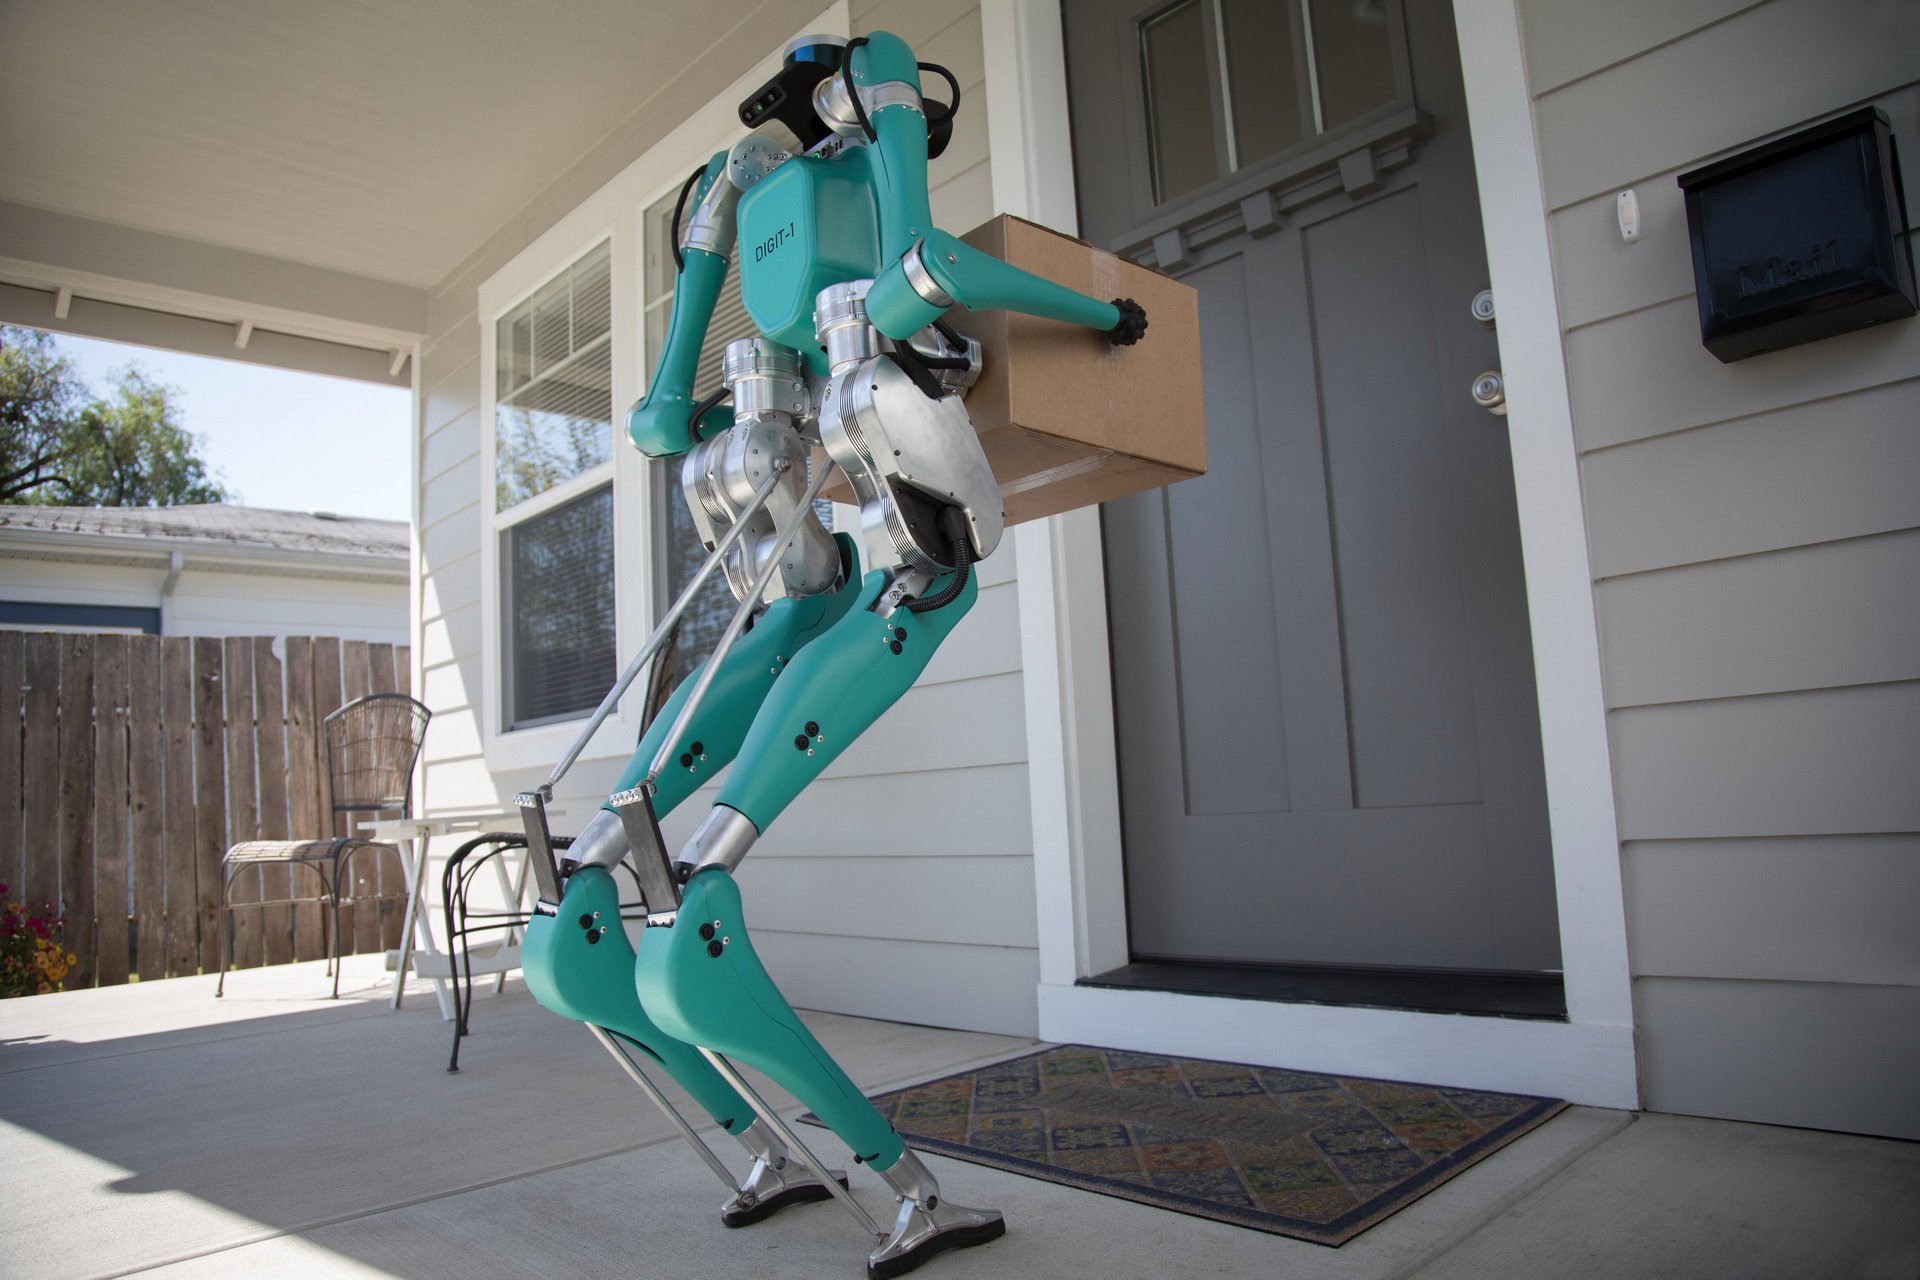 “بالفيديو والصور” فورد طورت روبوت يوصّل الطلبيات للمنازل